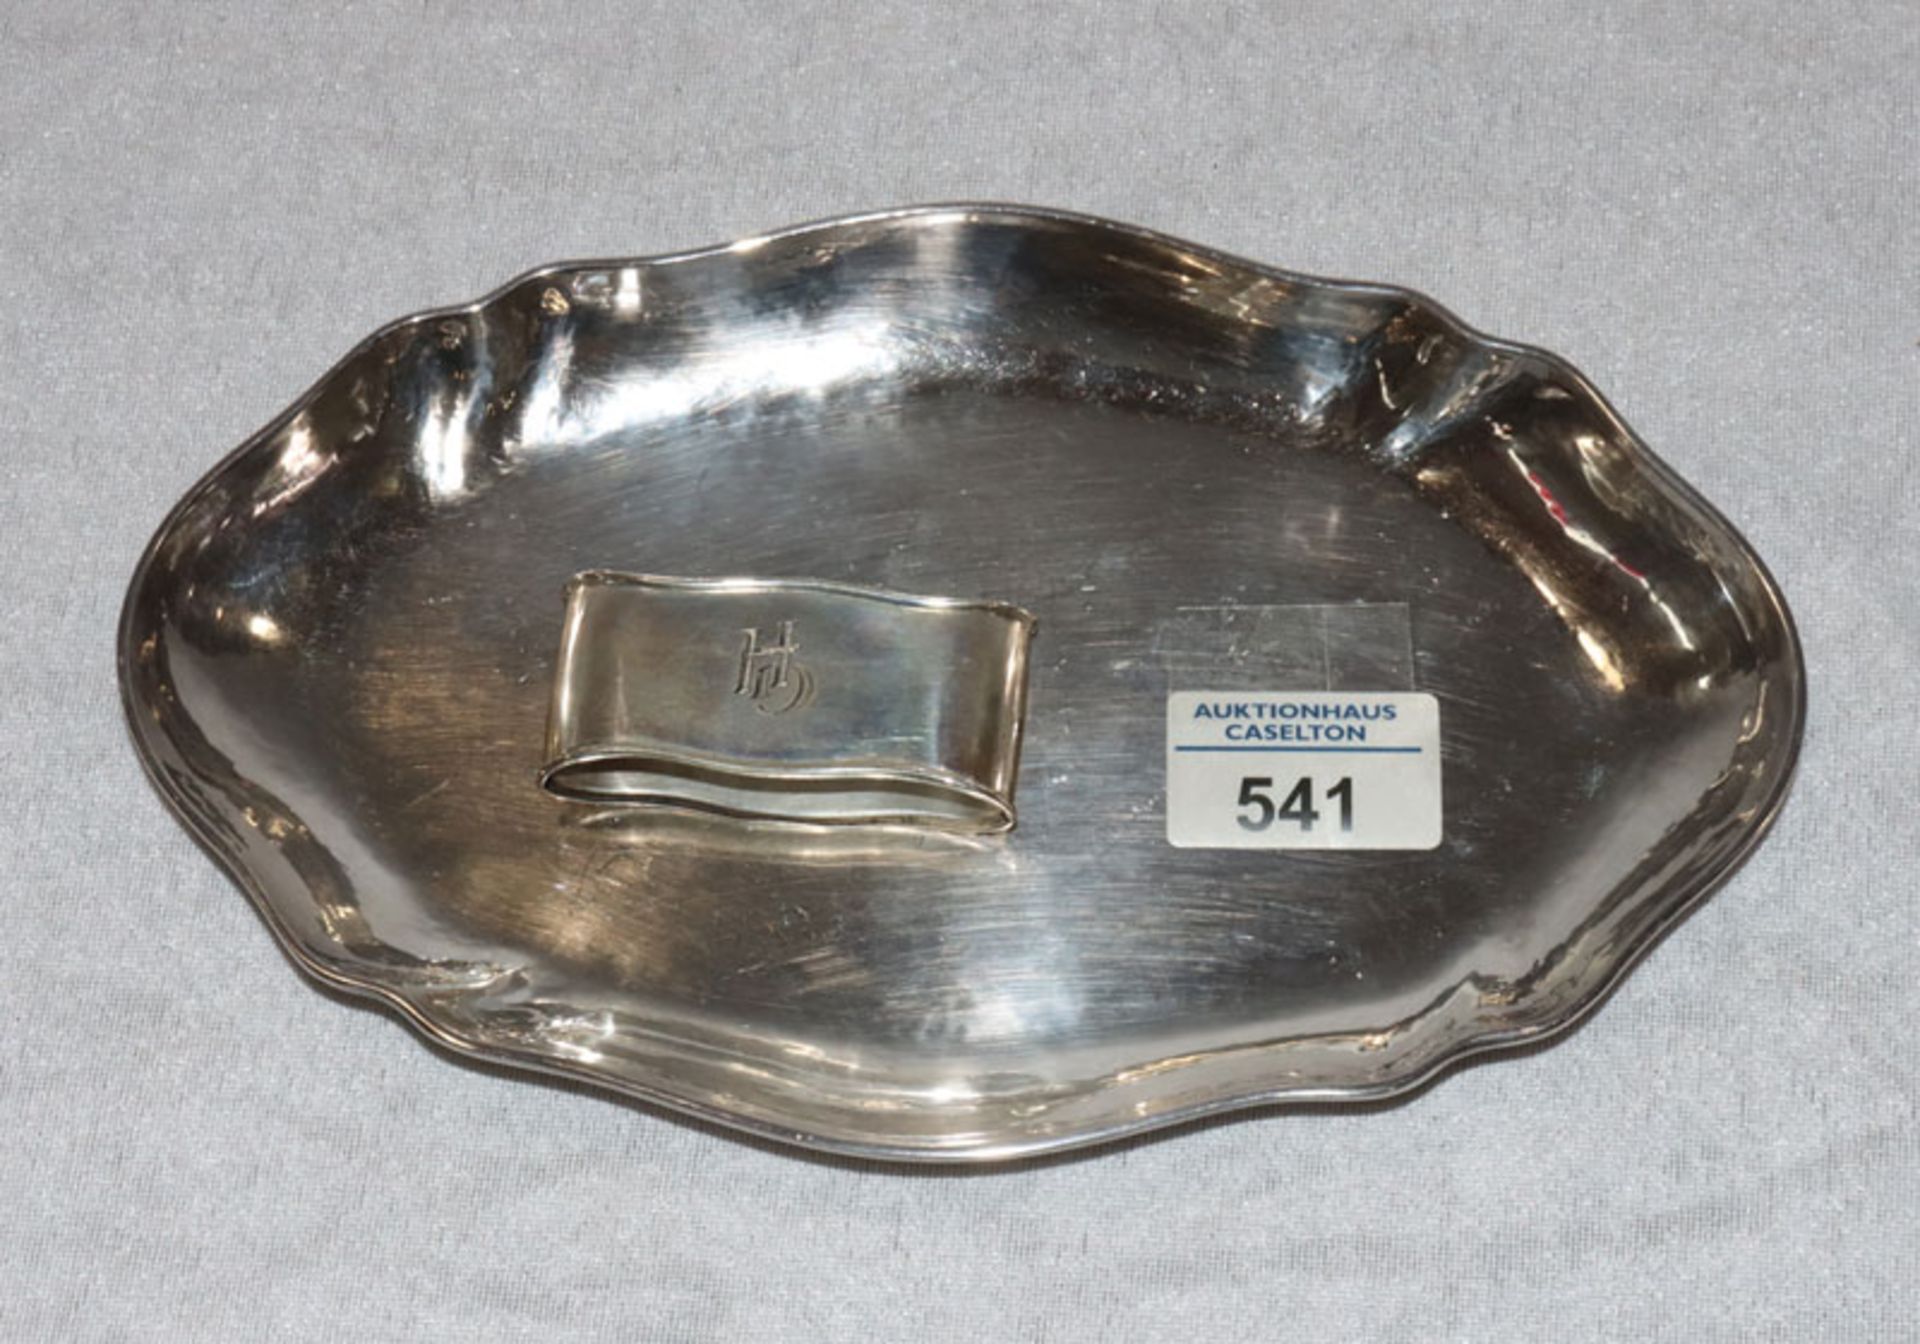 Ovales Tablett mit geschwungenem Rand, 800 Silber, L 23 cm, B 15 cm, und Serviettenring mit